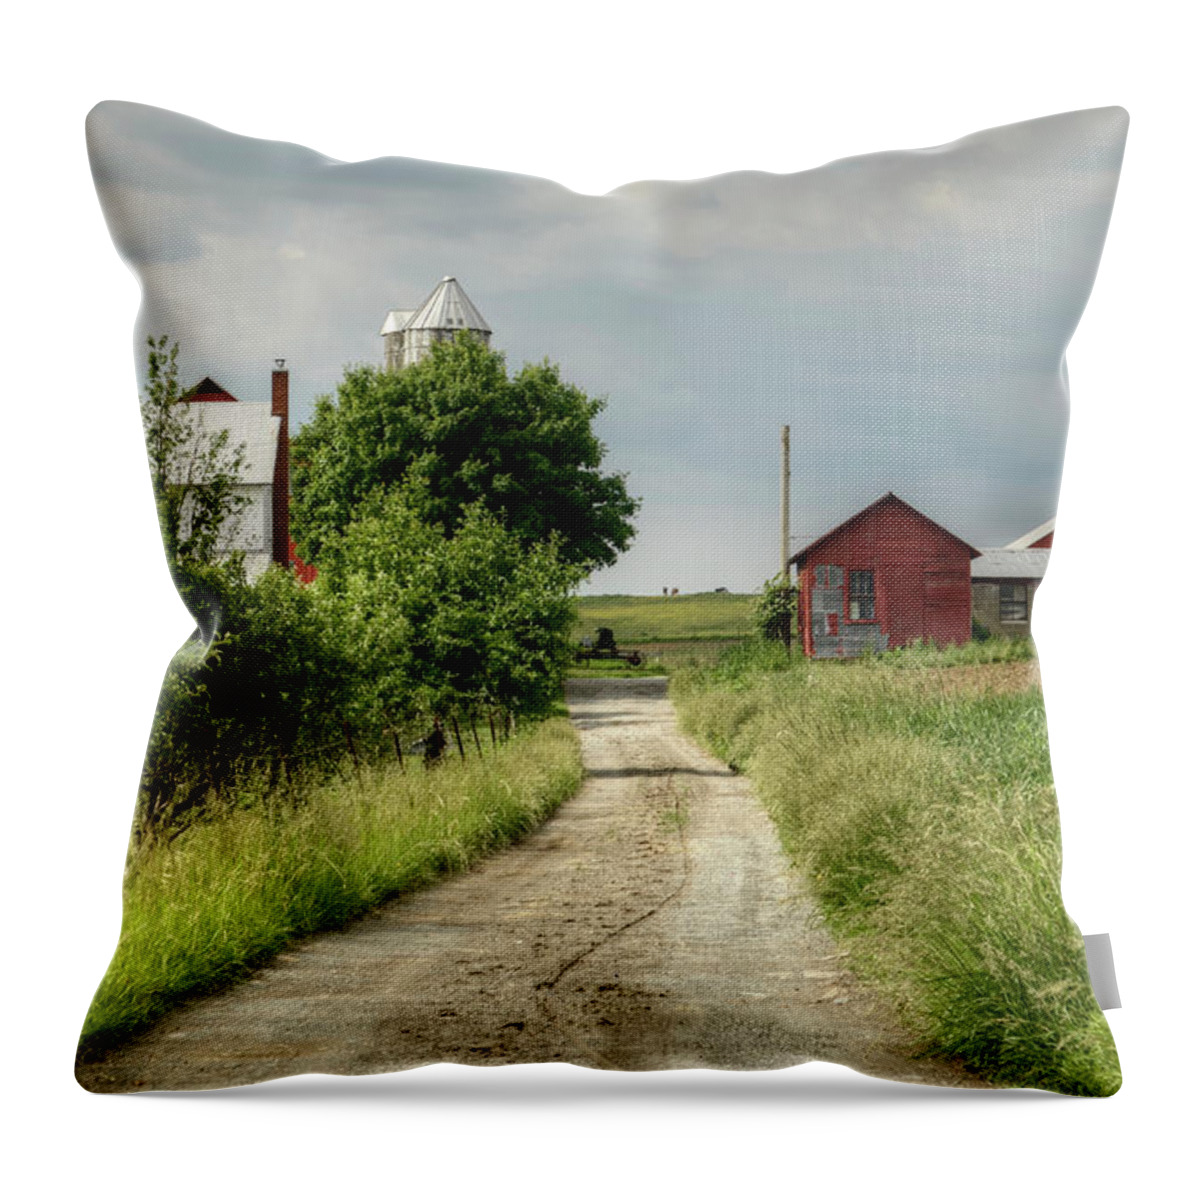 Farm Throw Pillow featuring the photograph Farm by Ann Bridges